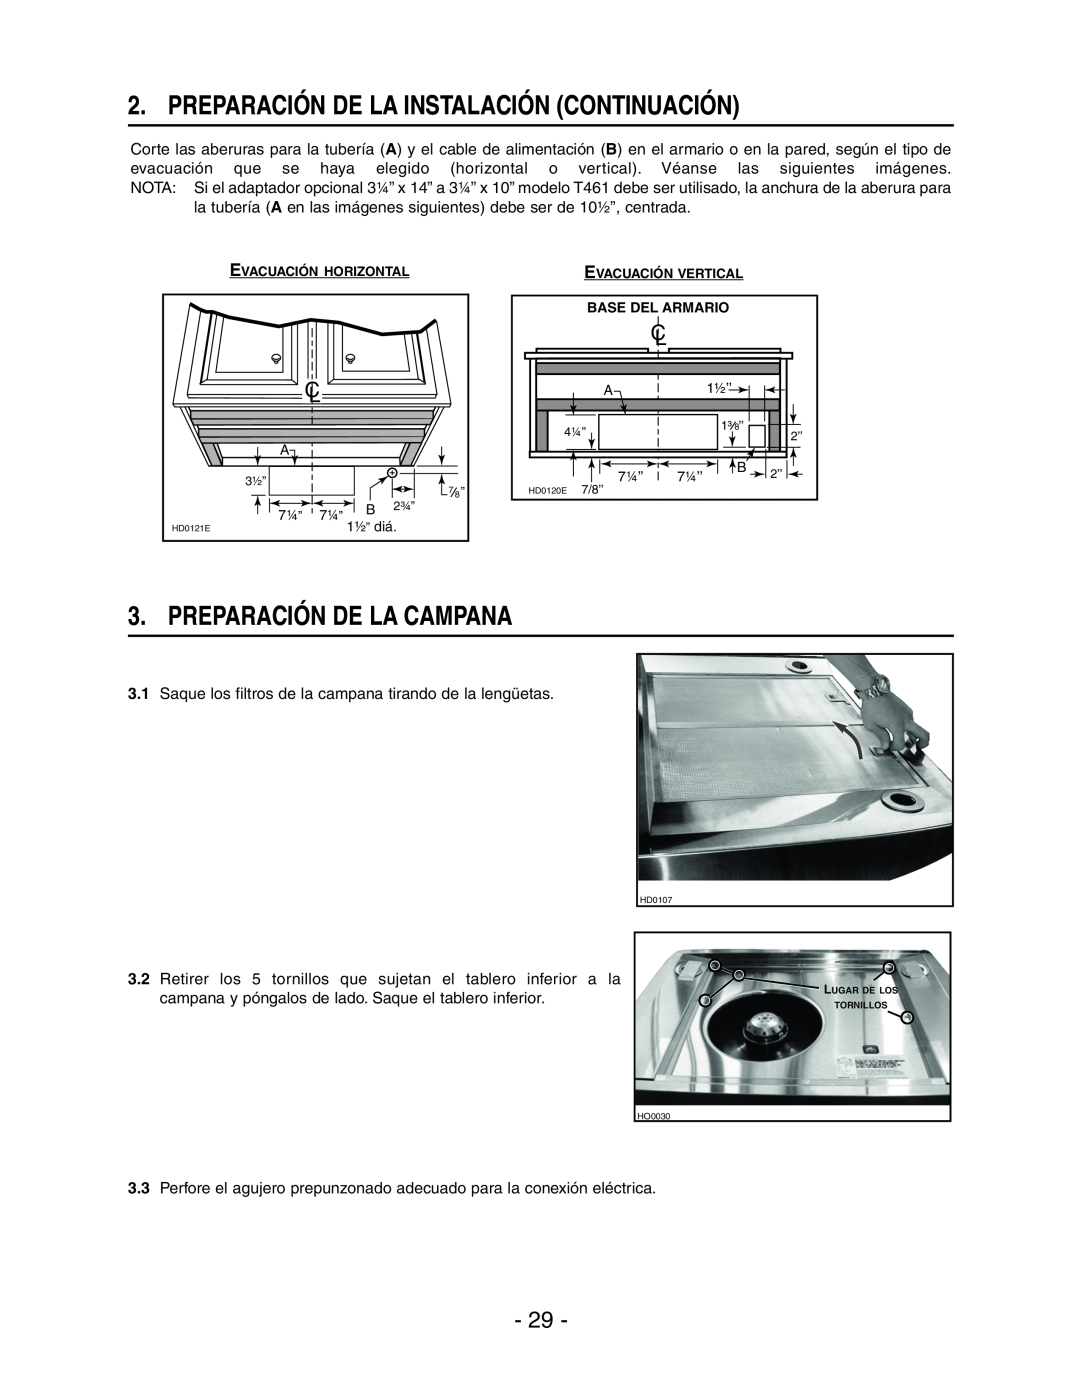 Broan E661 manual Preparación De La Instalación Continuación, Preparación De La Campana, Evacuación Horizontal 